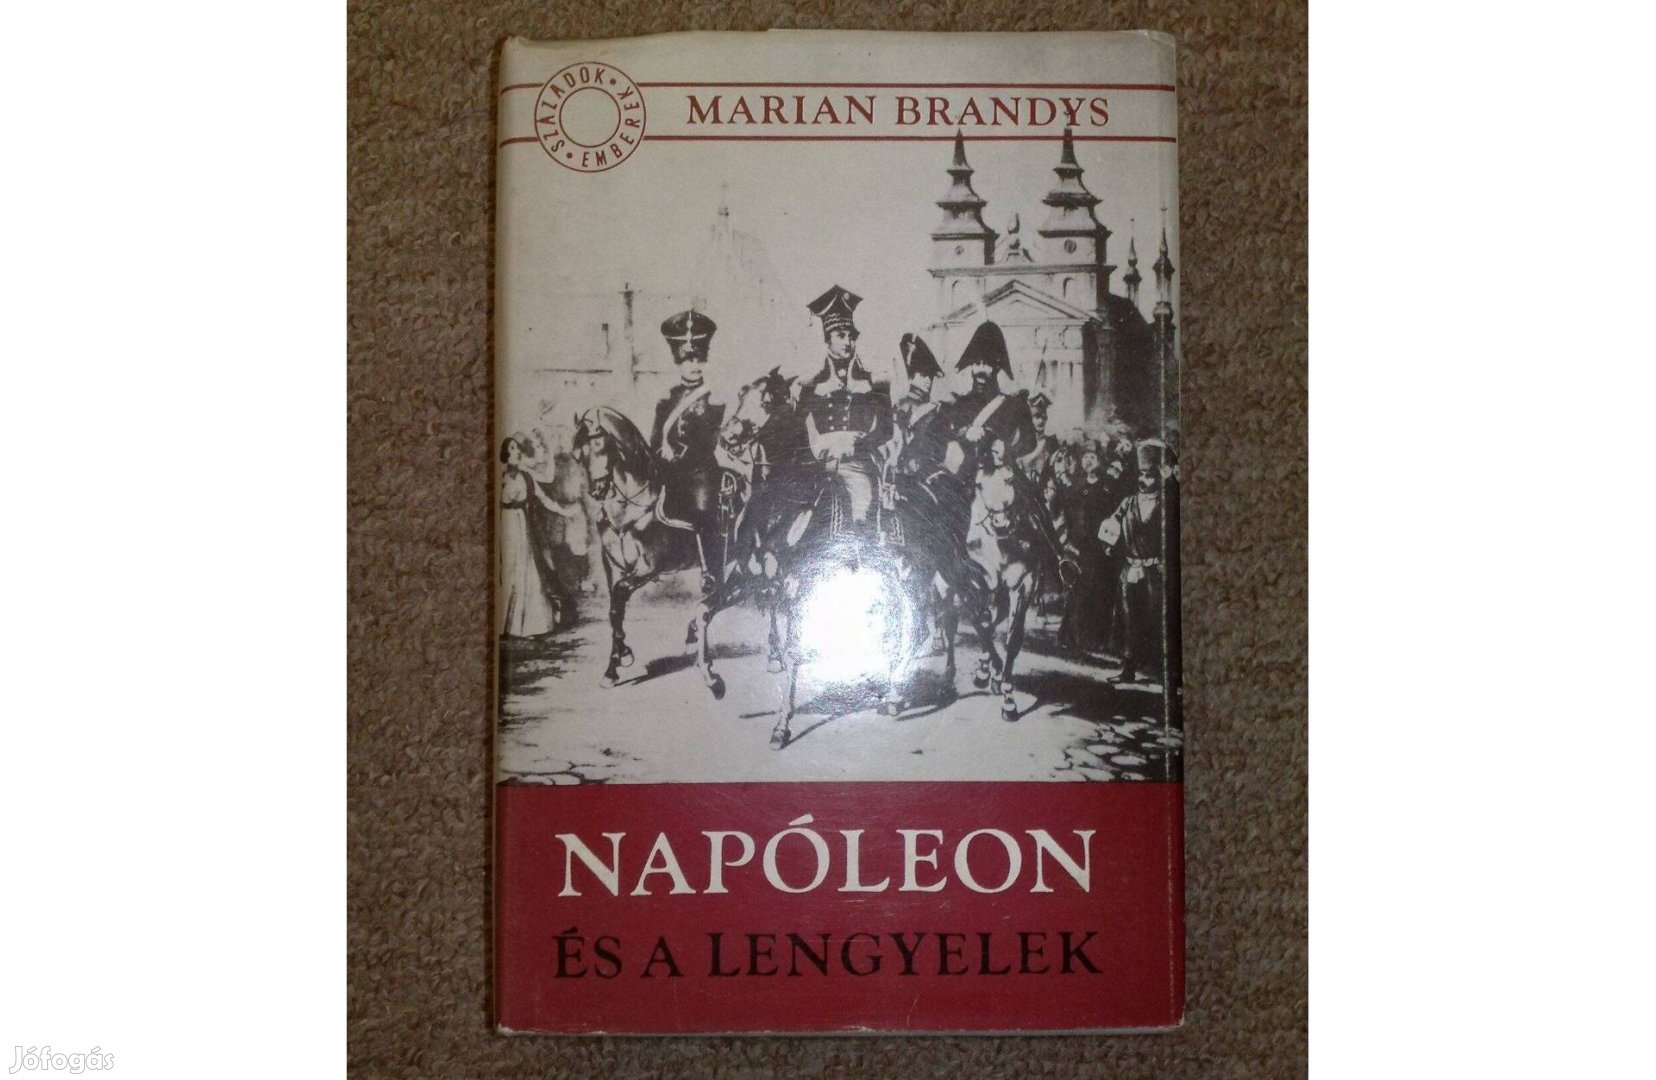 Napóleon és a lengyelek (Marian Brandys)